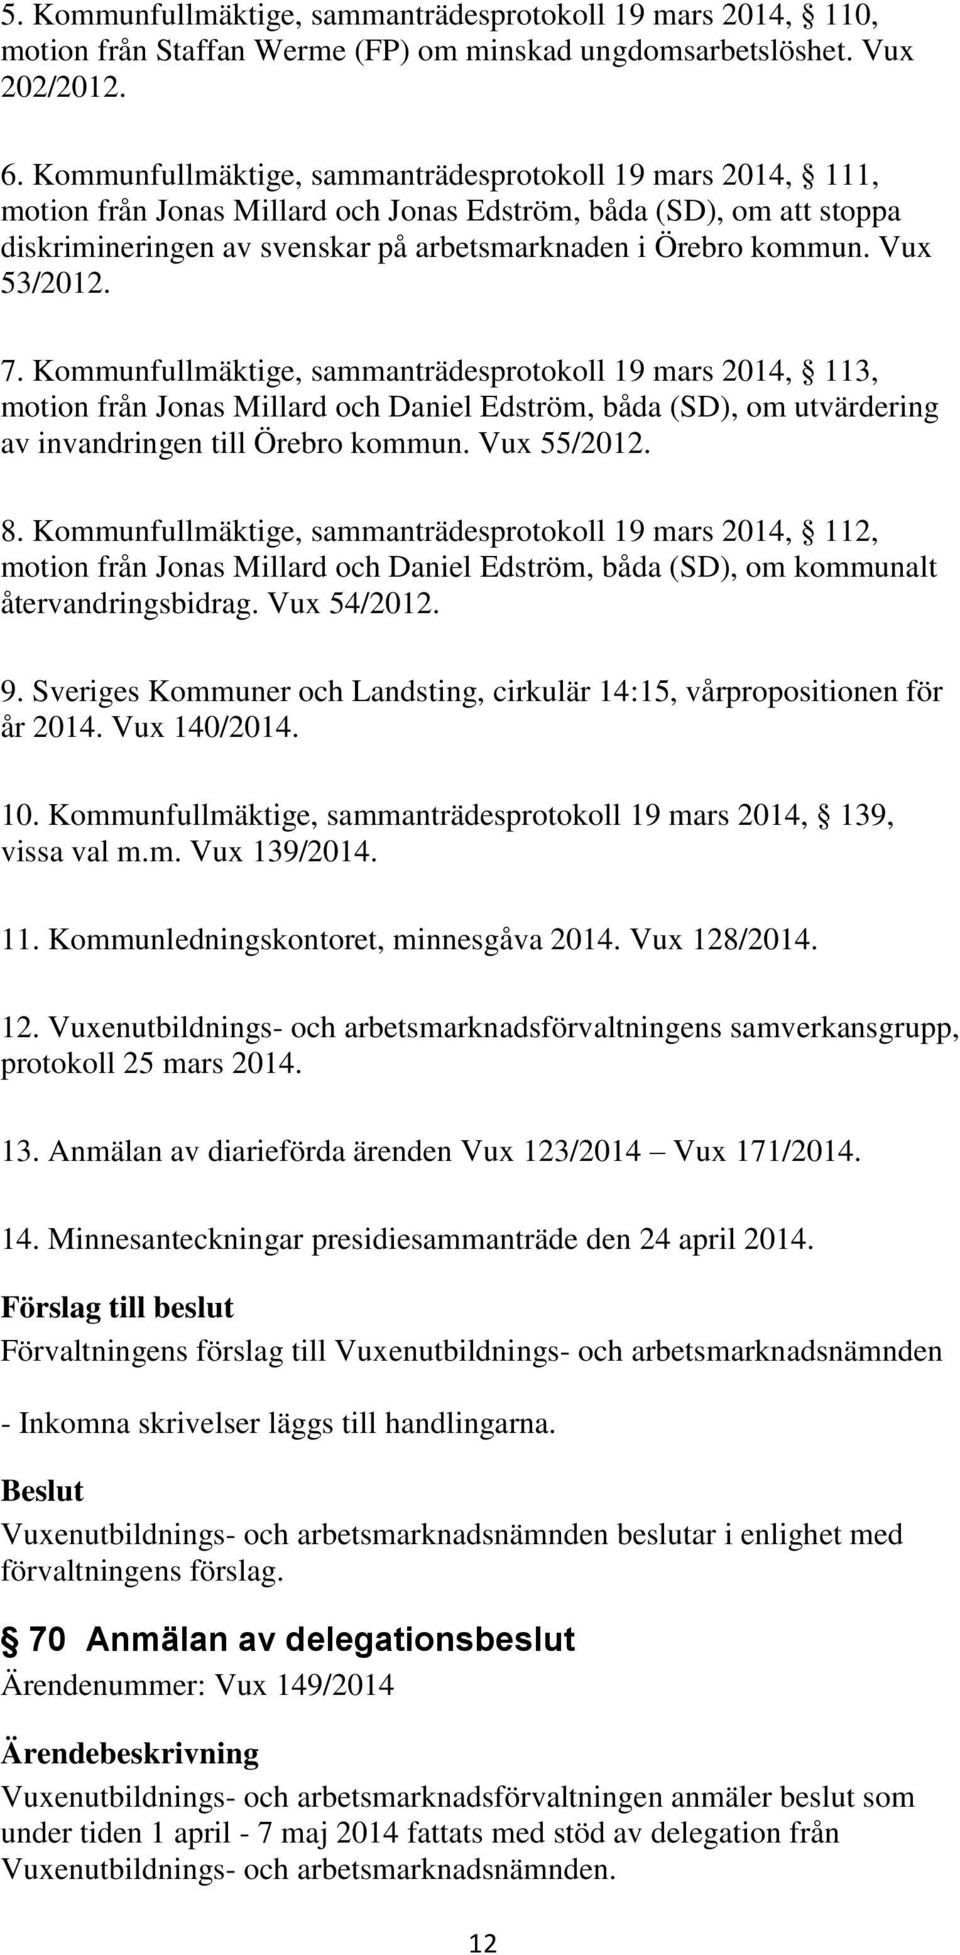 Vux 53/2012. 7. Kommunfullmäktige, sammanträdesprotokoll 19 mars 2014, 113, motion från Jonas Millard och Daniel Edström, båda (SD), om utvärdering av invandringen till Örebro kommun. Vux 55/2012. 8.